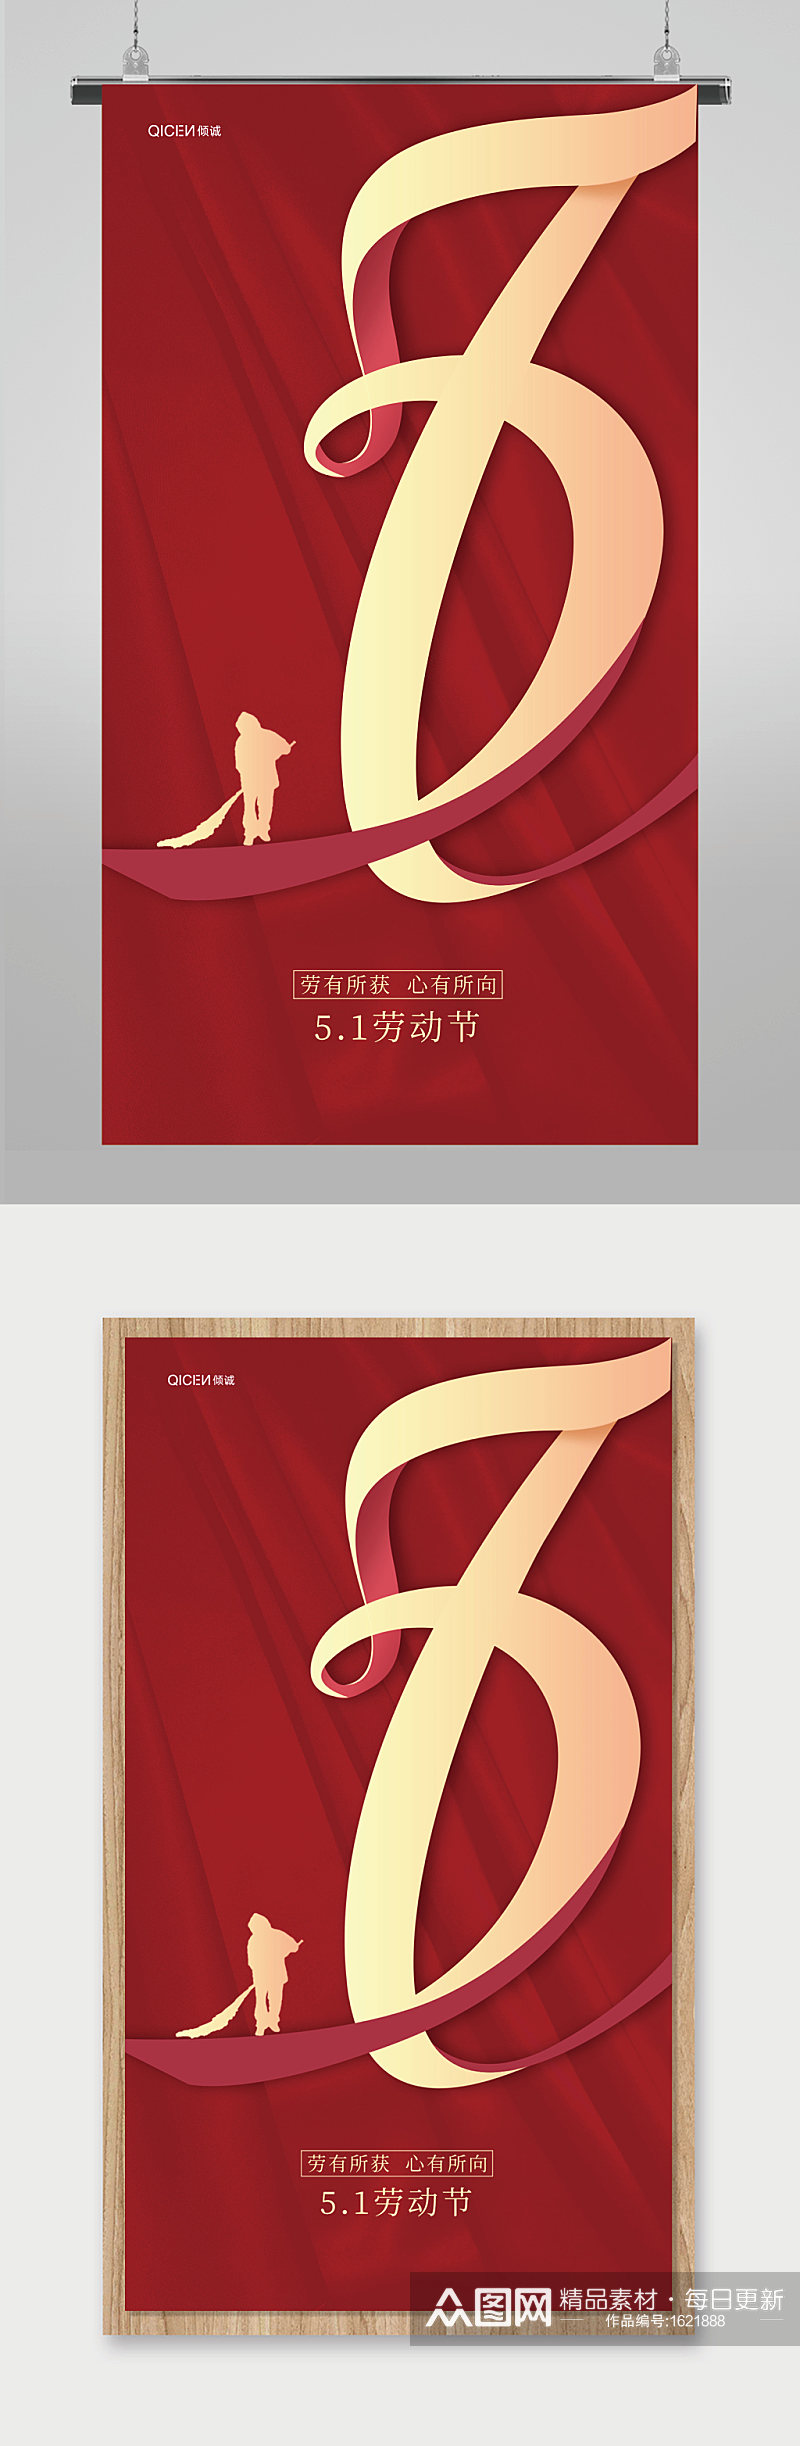 红色高端大气传统节日51劳动节宣传海报素材